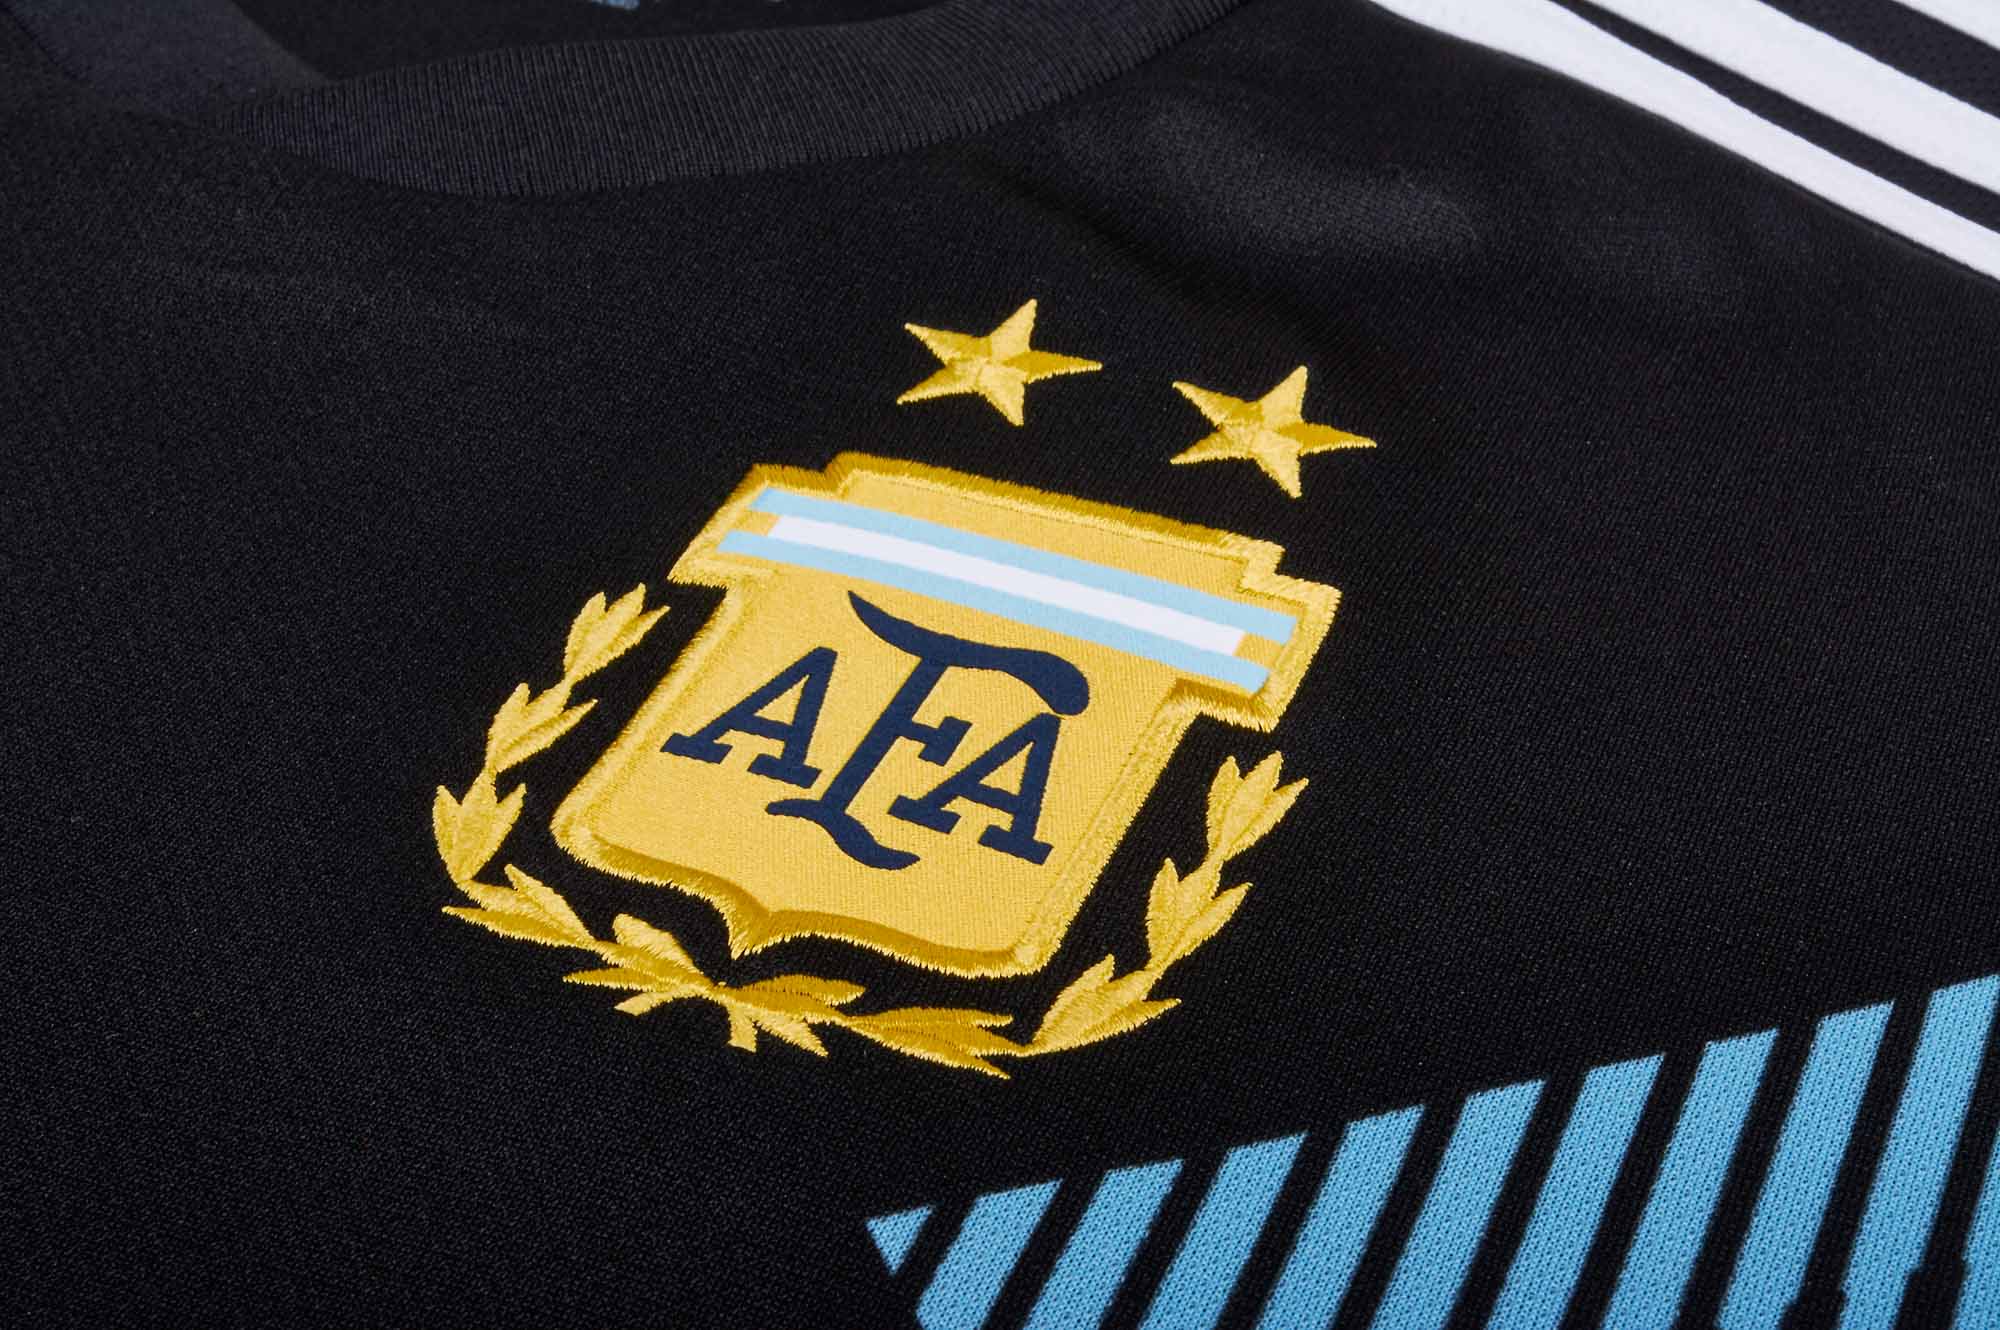 away argentina jersey